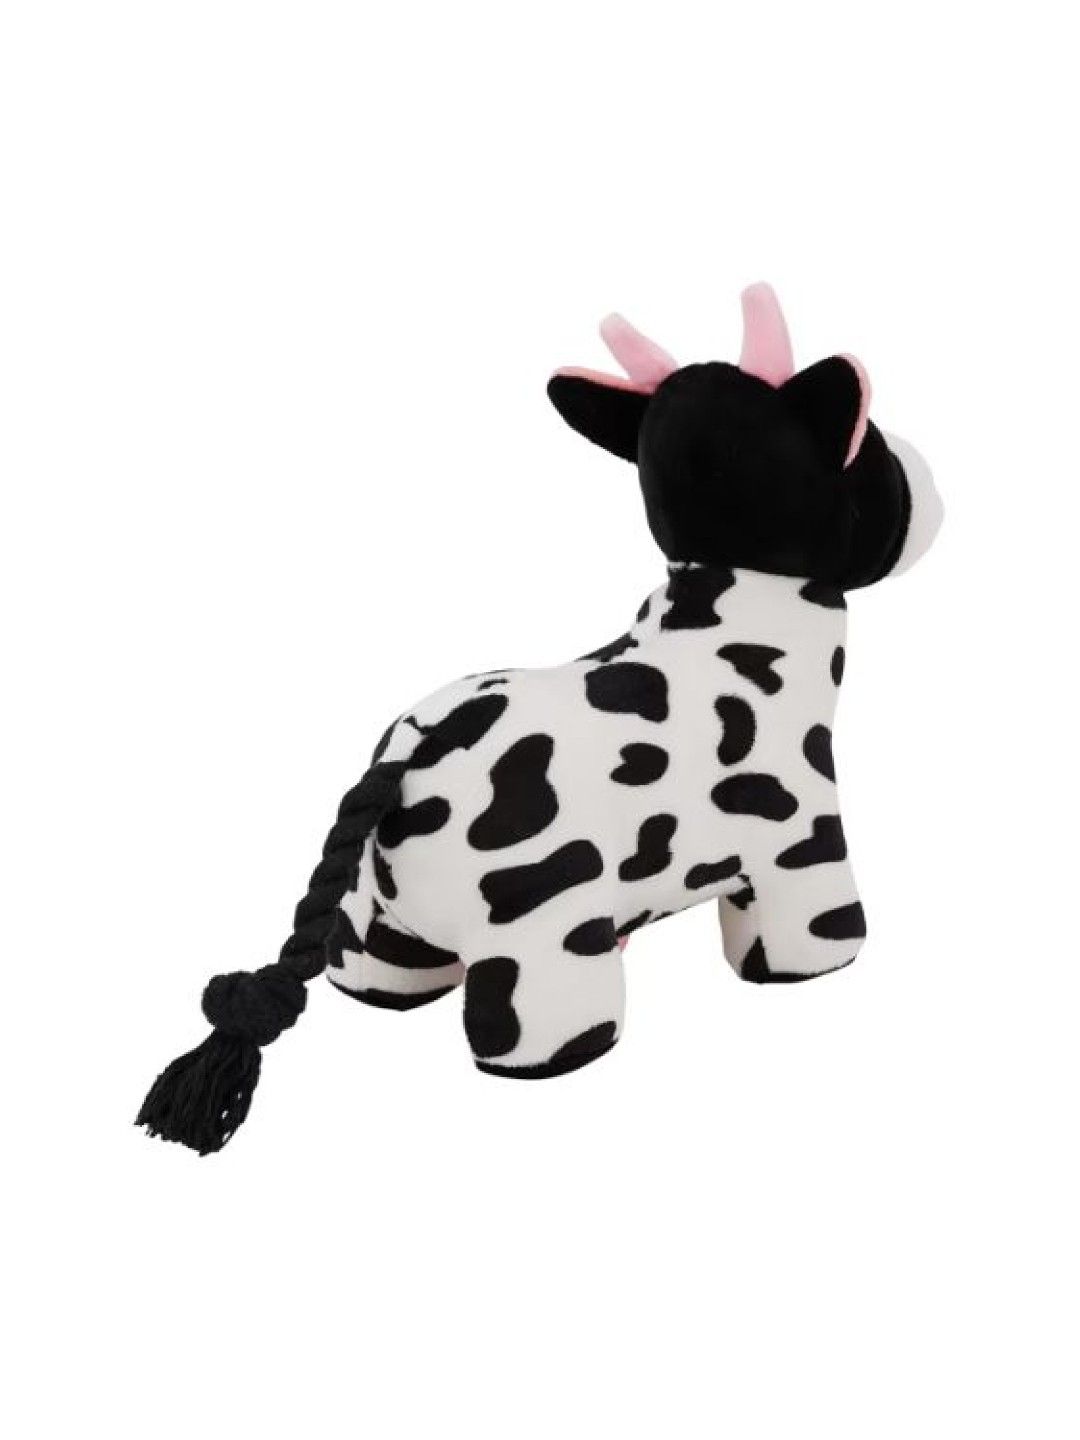 Anko Pet Toy Plush Cow (Black/White- Image 2)